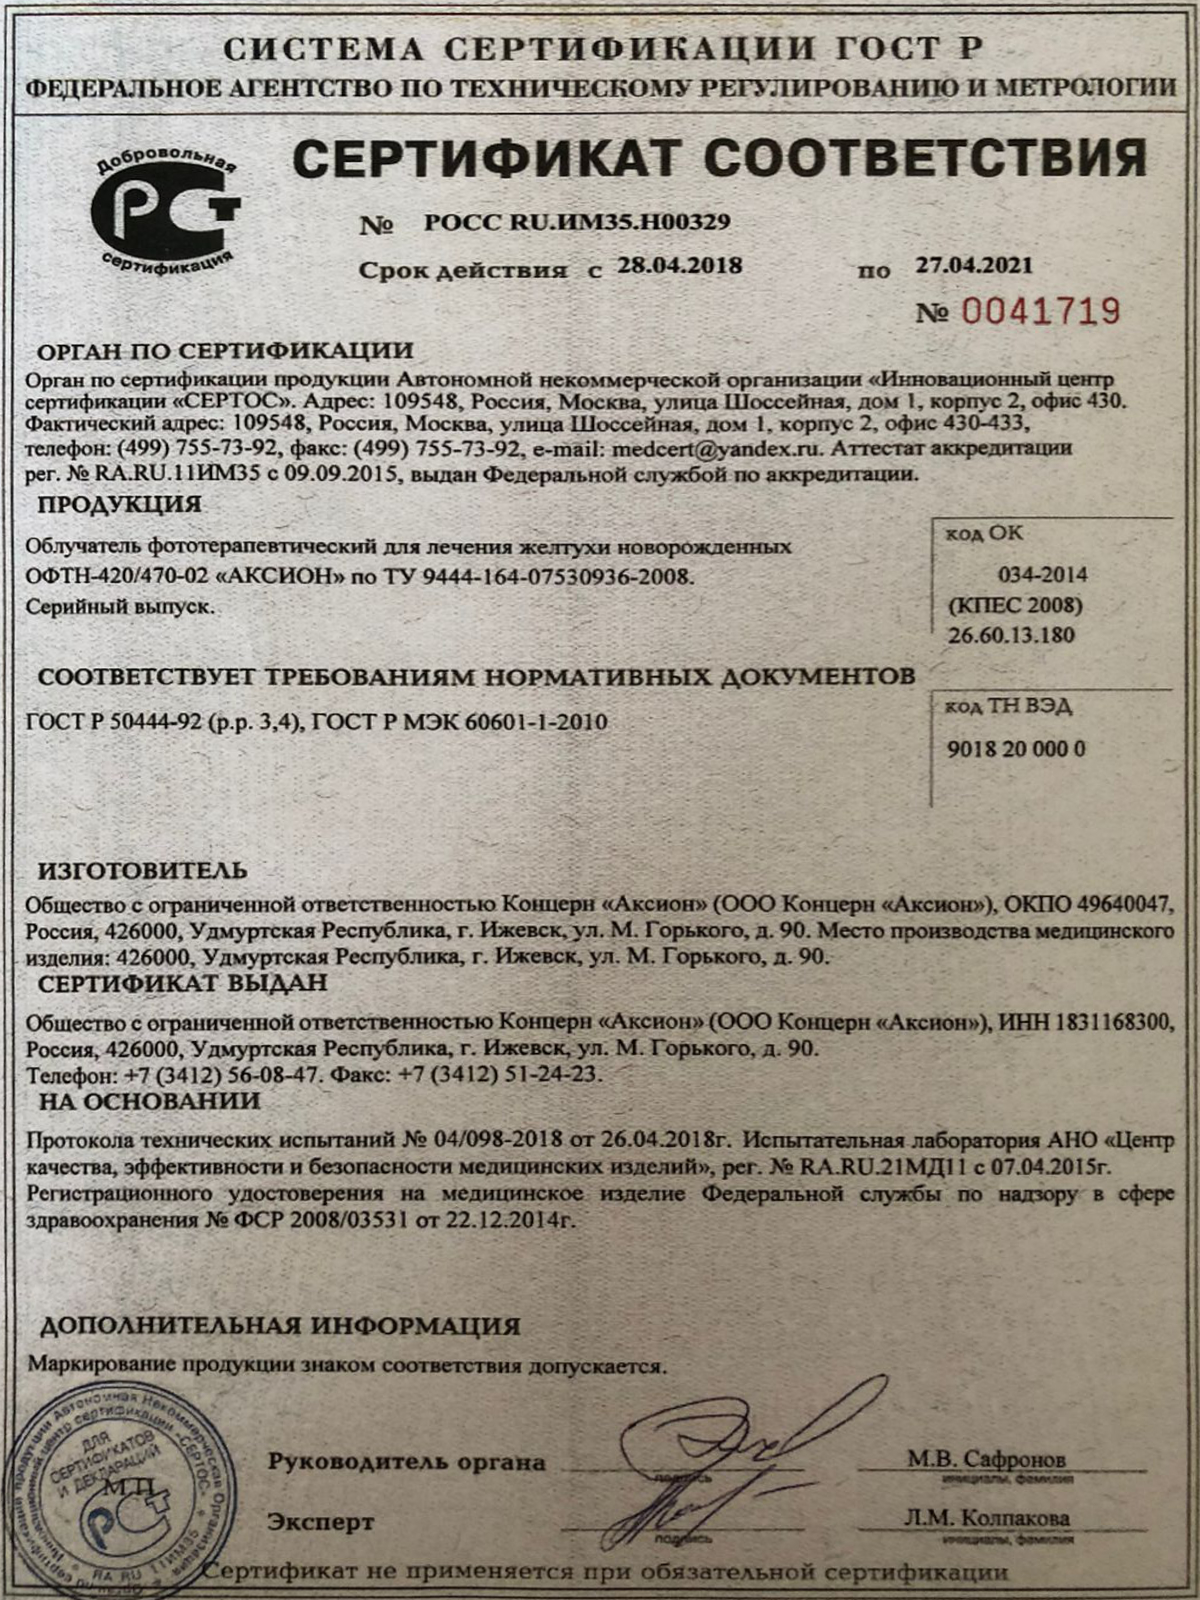 Сертификат ЕАС лампы верхнего света ОФТН-420 'Аксион'